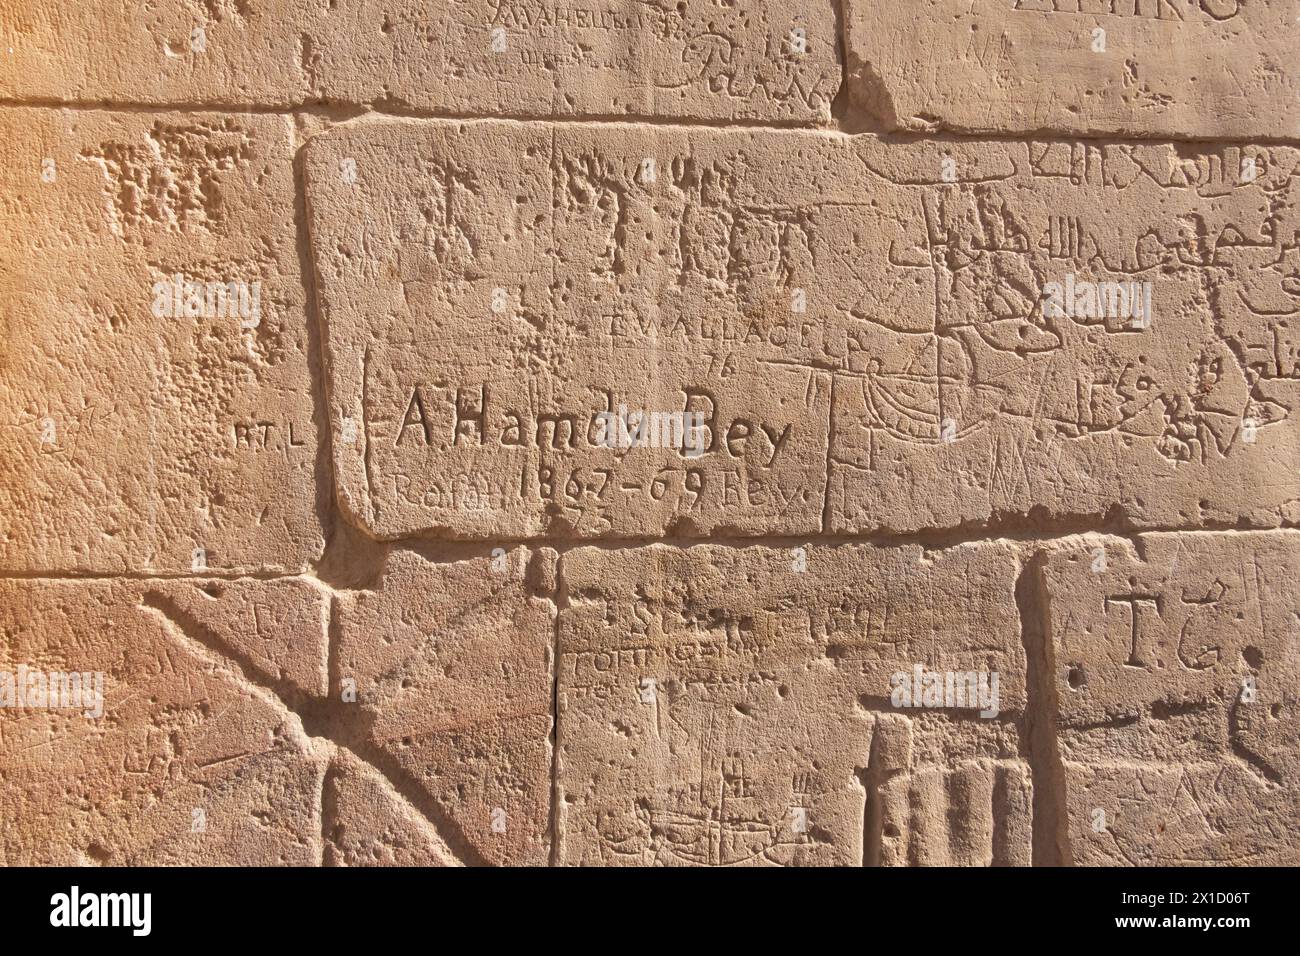 Vieux graffitis sur les murs, complexe du temple de Philae, île d'Agilkia, réservoir du barrage d'Assouan. Lieu de sépulture d'Osiris. Égypte Banque D'Images